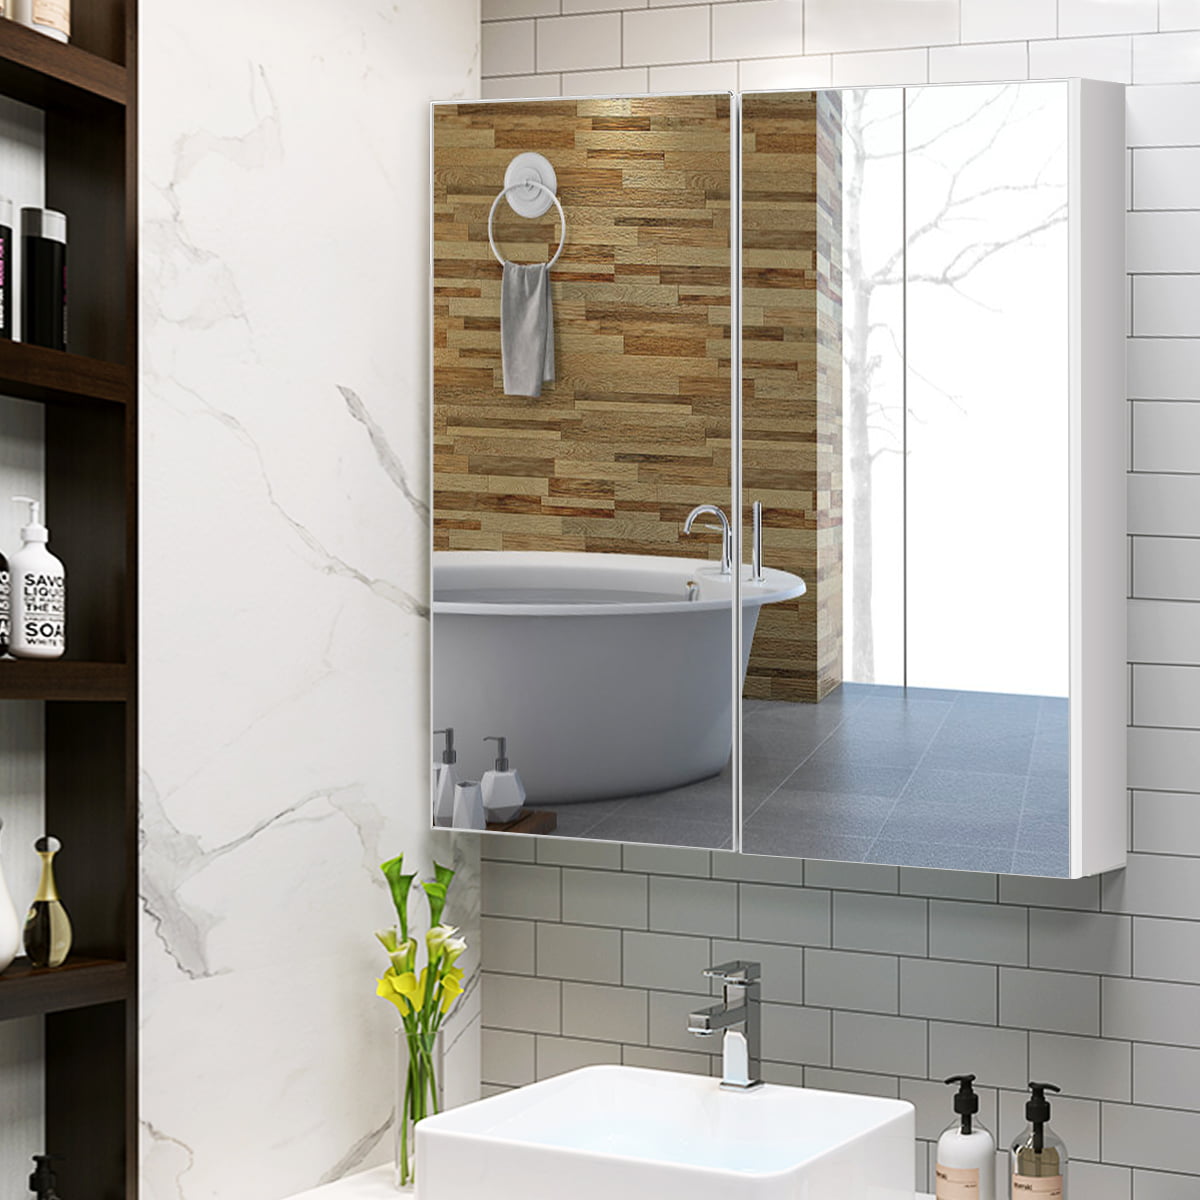 Circulaire Mur Blanc étagère avec miroir Unité salle de bains cuisine hall 